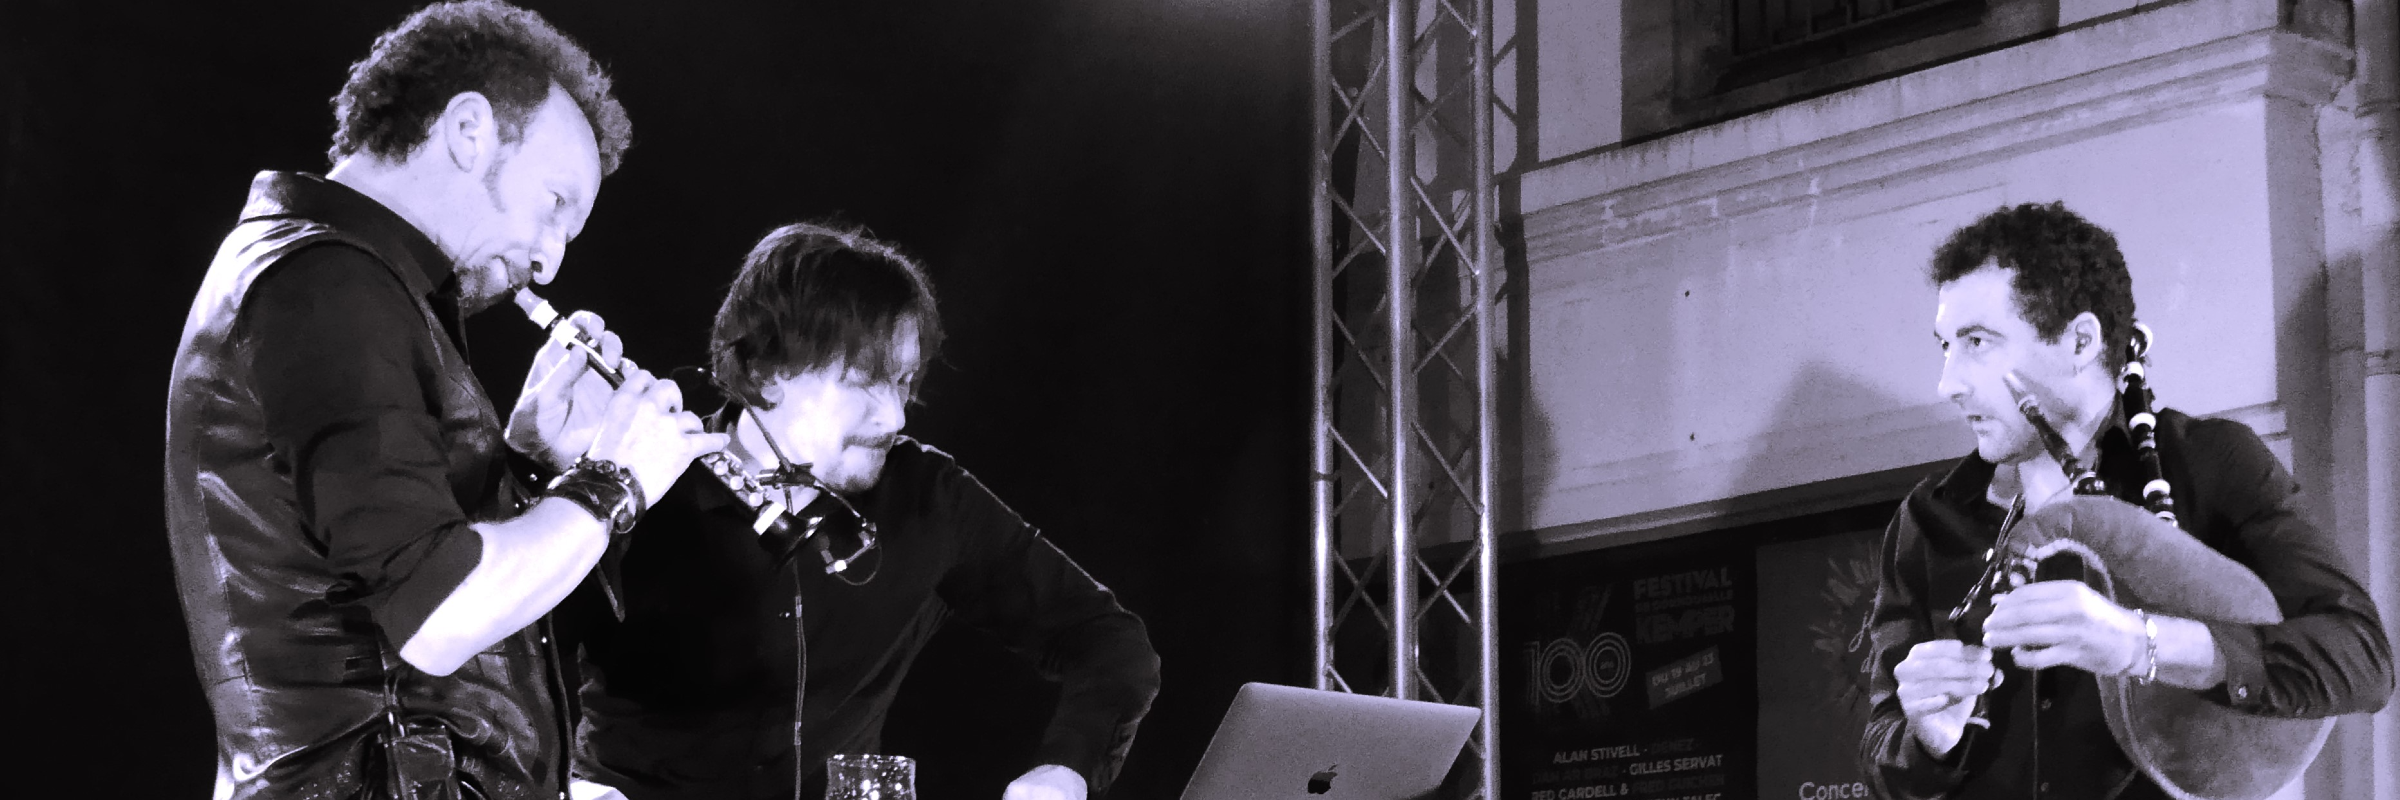 David Pasquet 3, DJ Electronique en représentation à Ille et Vilaine - photo de couverture n° 2